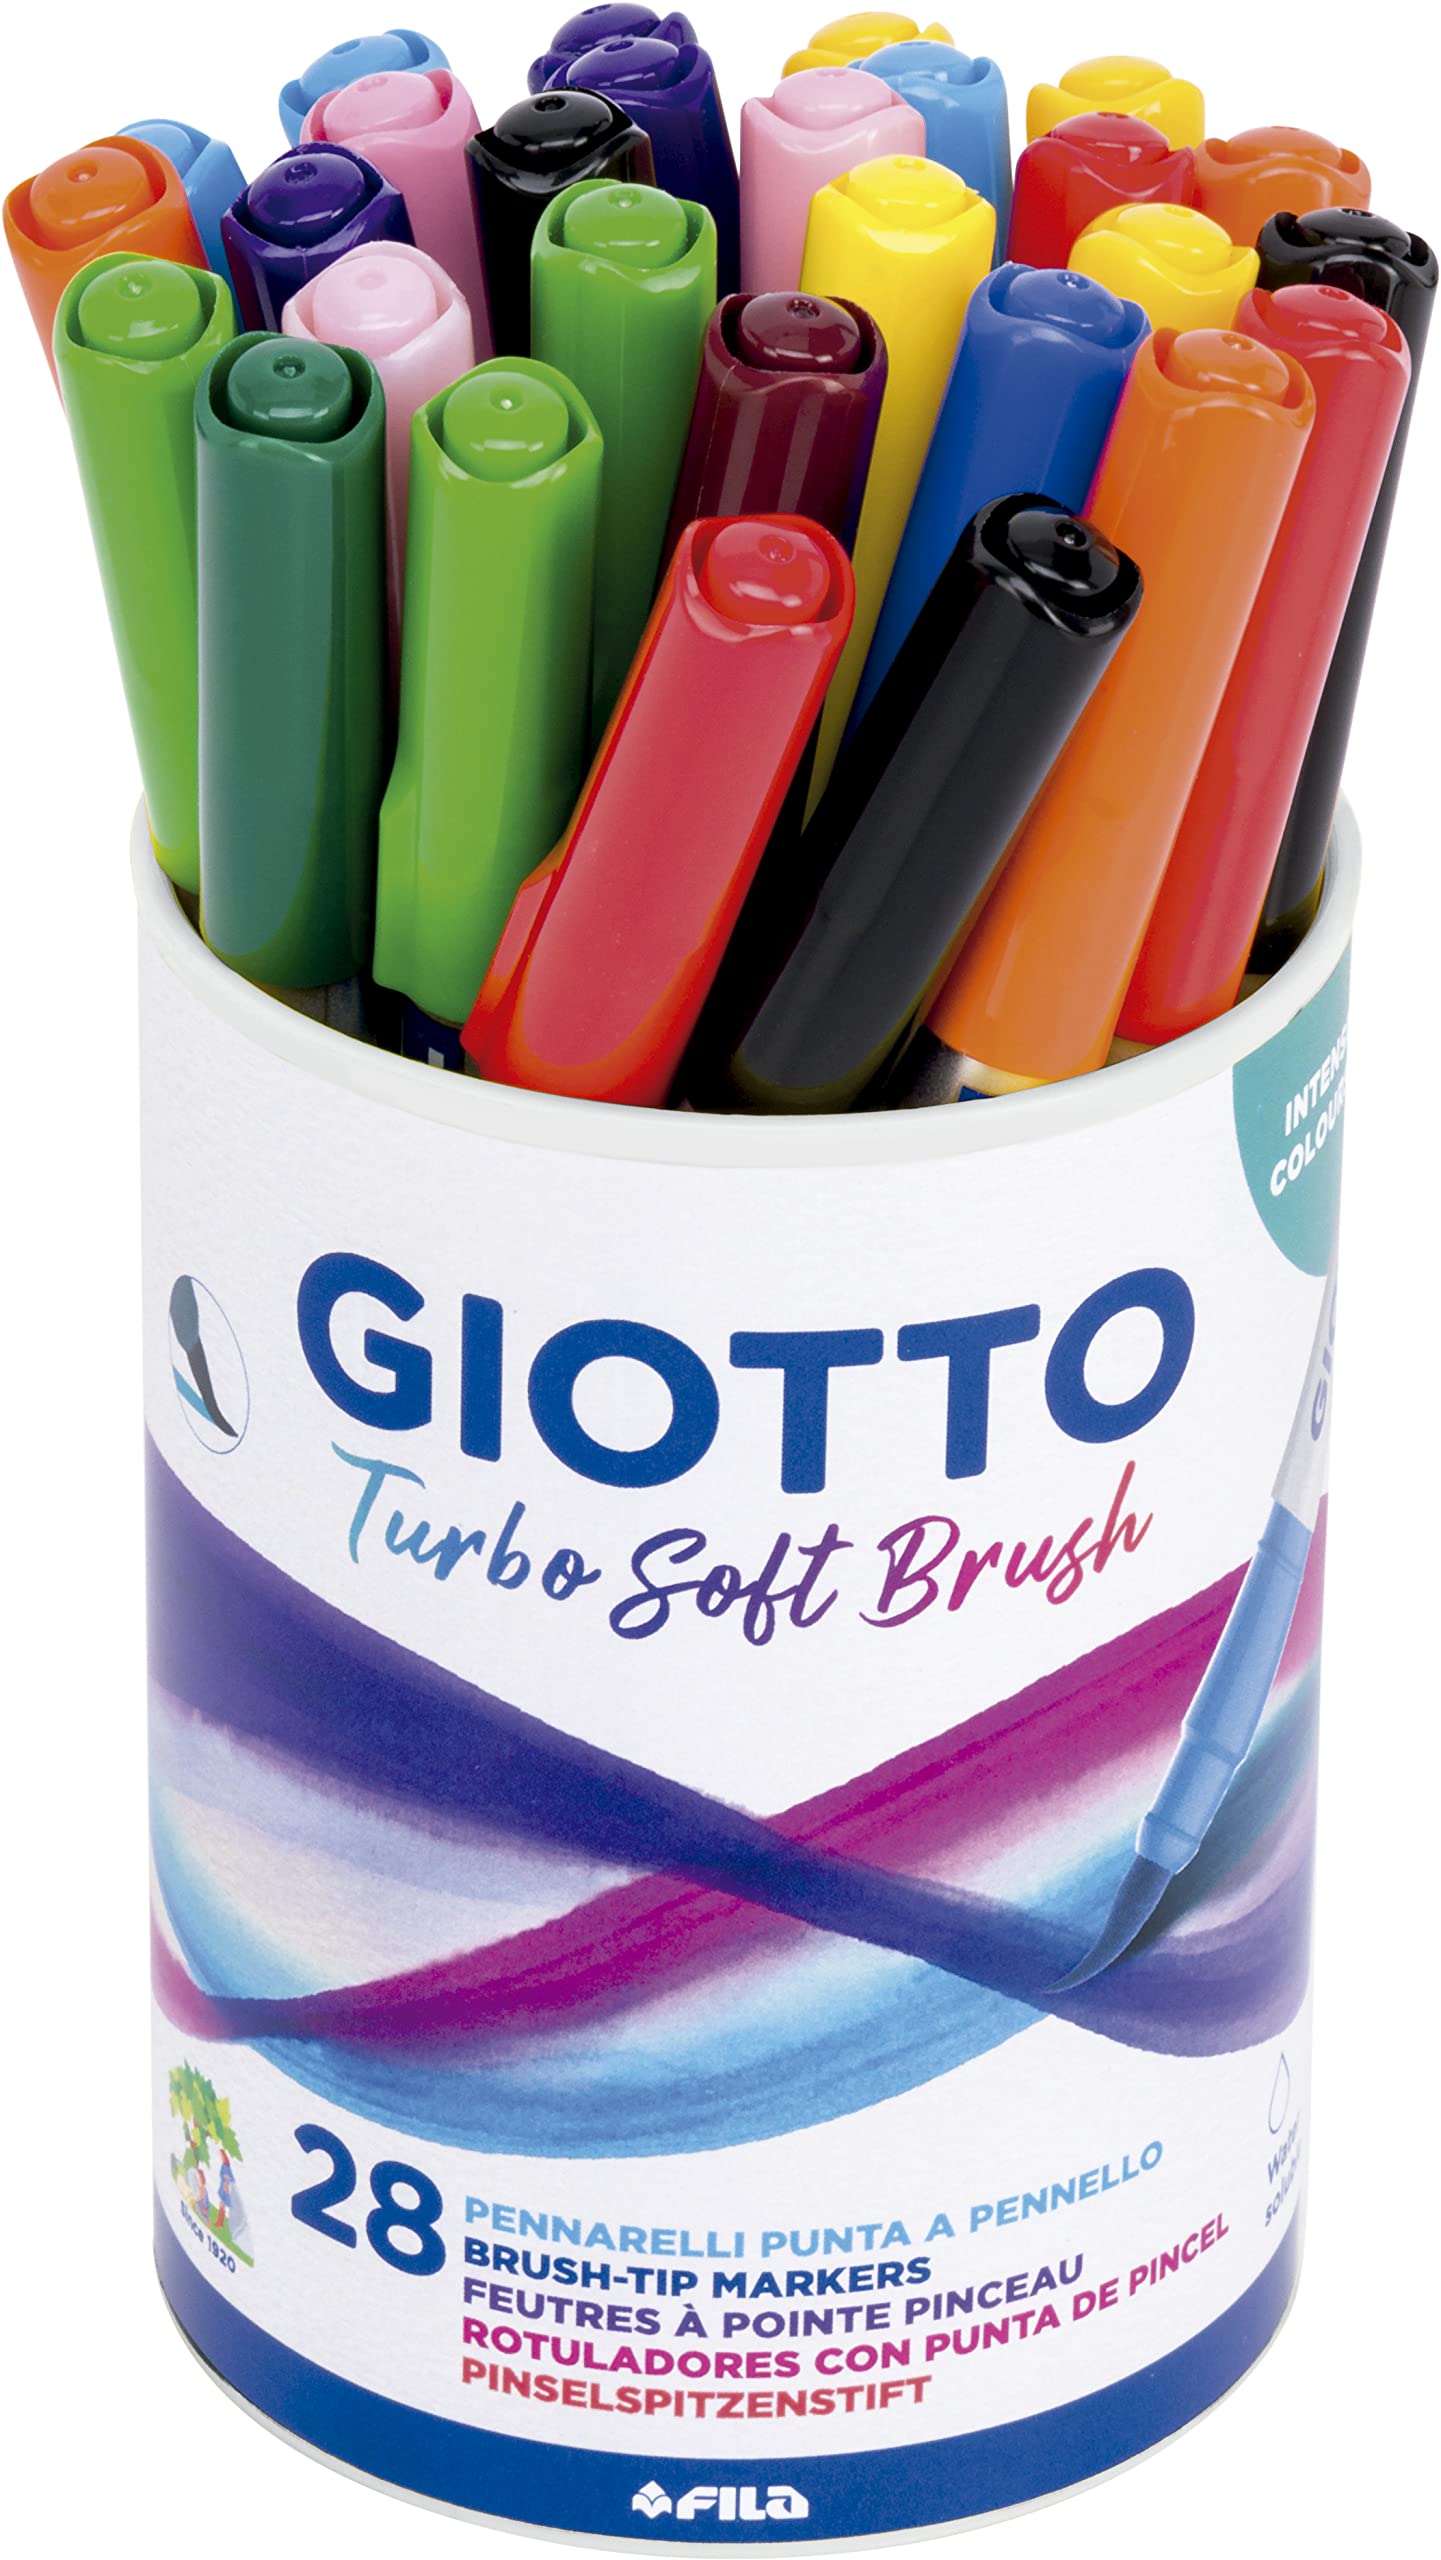 Barattolo 28 pennarelli Giotto turbo soft brush